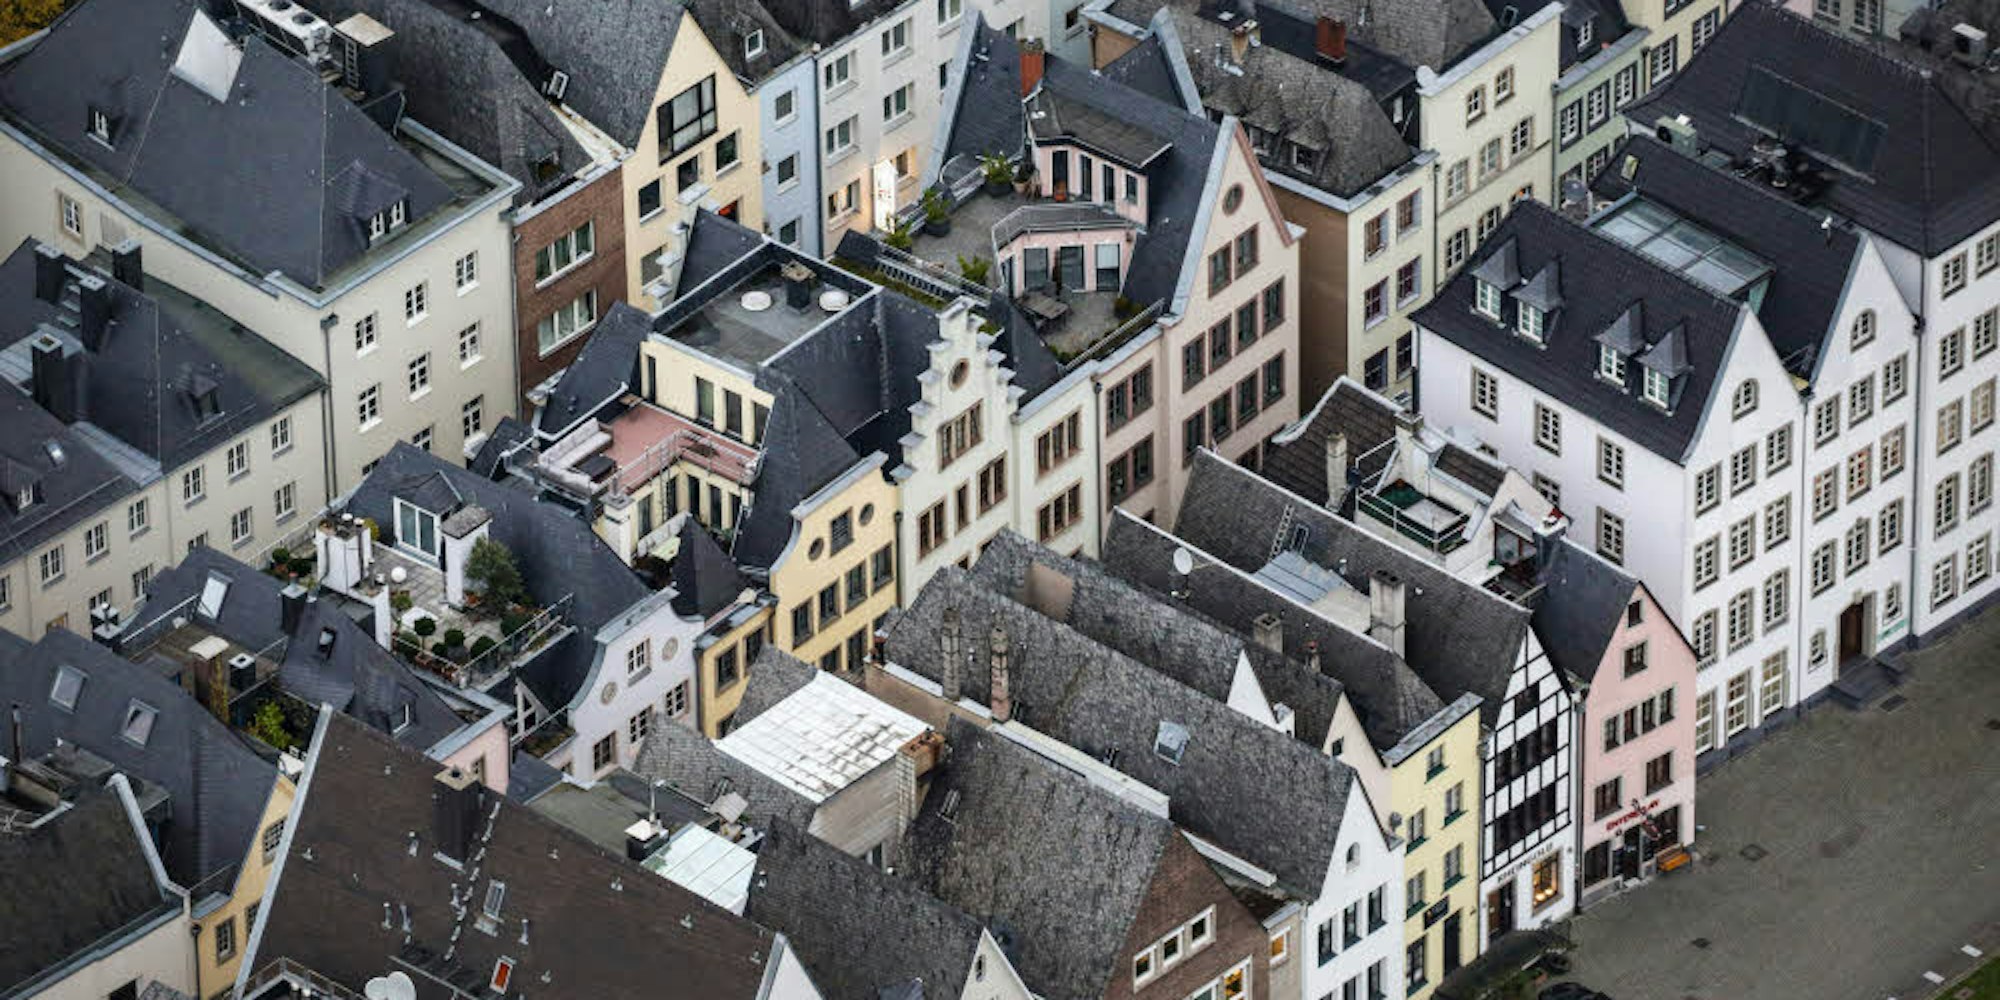 Die Altstadt ist beliebt bei Touristen – auch zum Übernachten. Hier gibt es eine Reihe von Airbnb-Wohnungen.